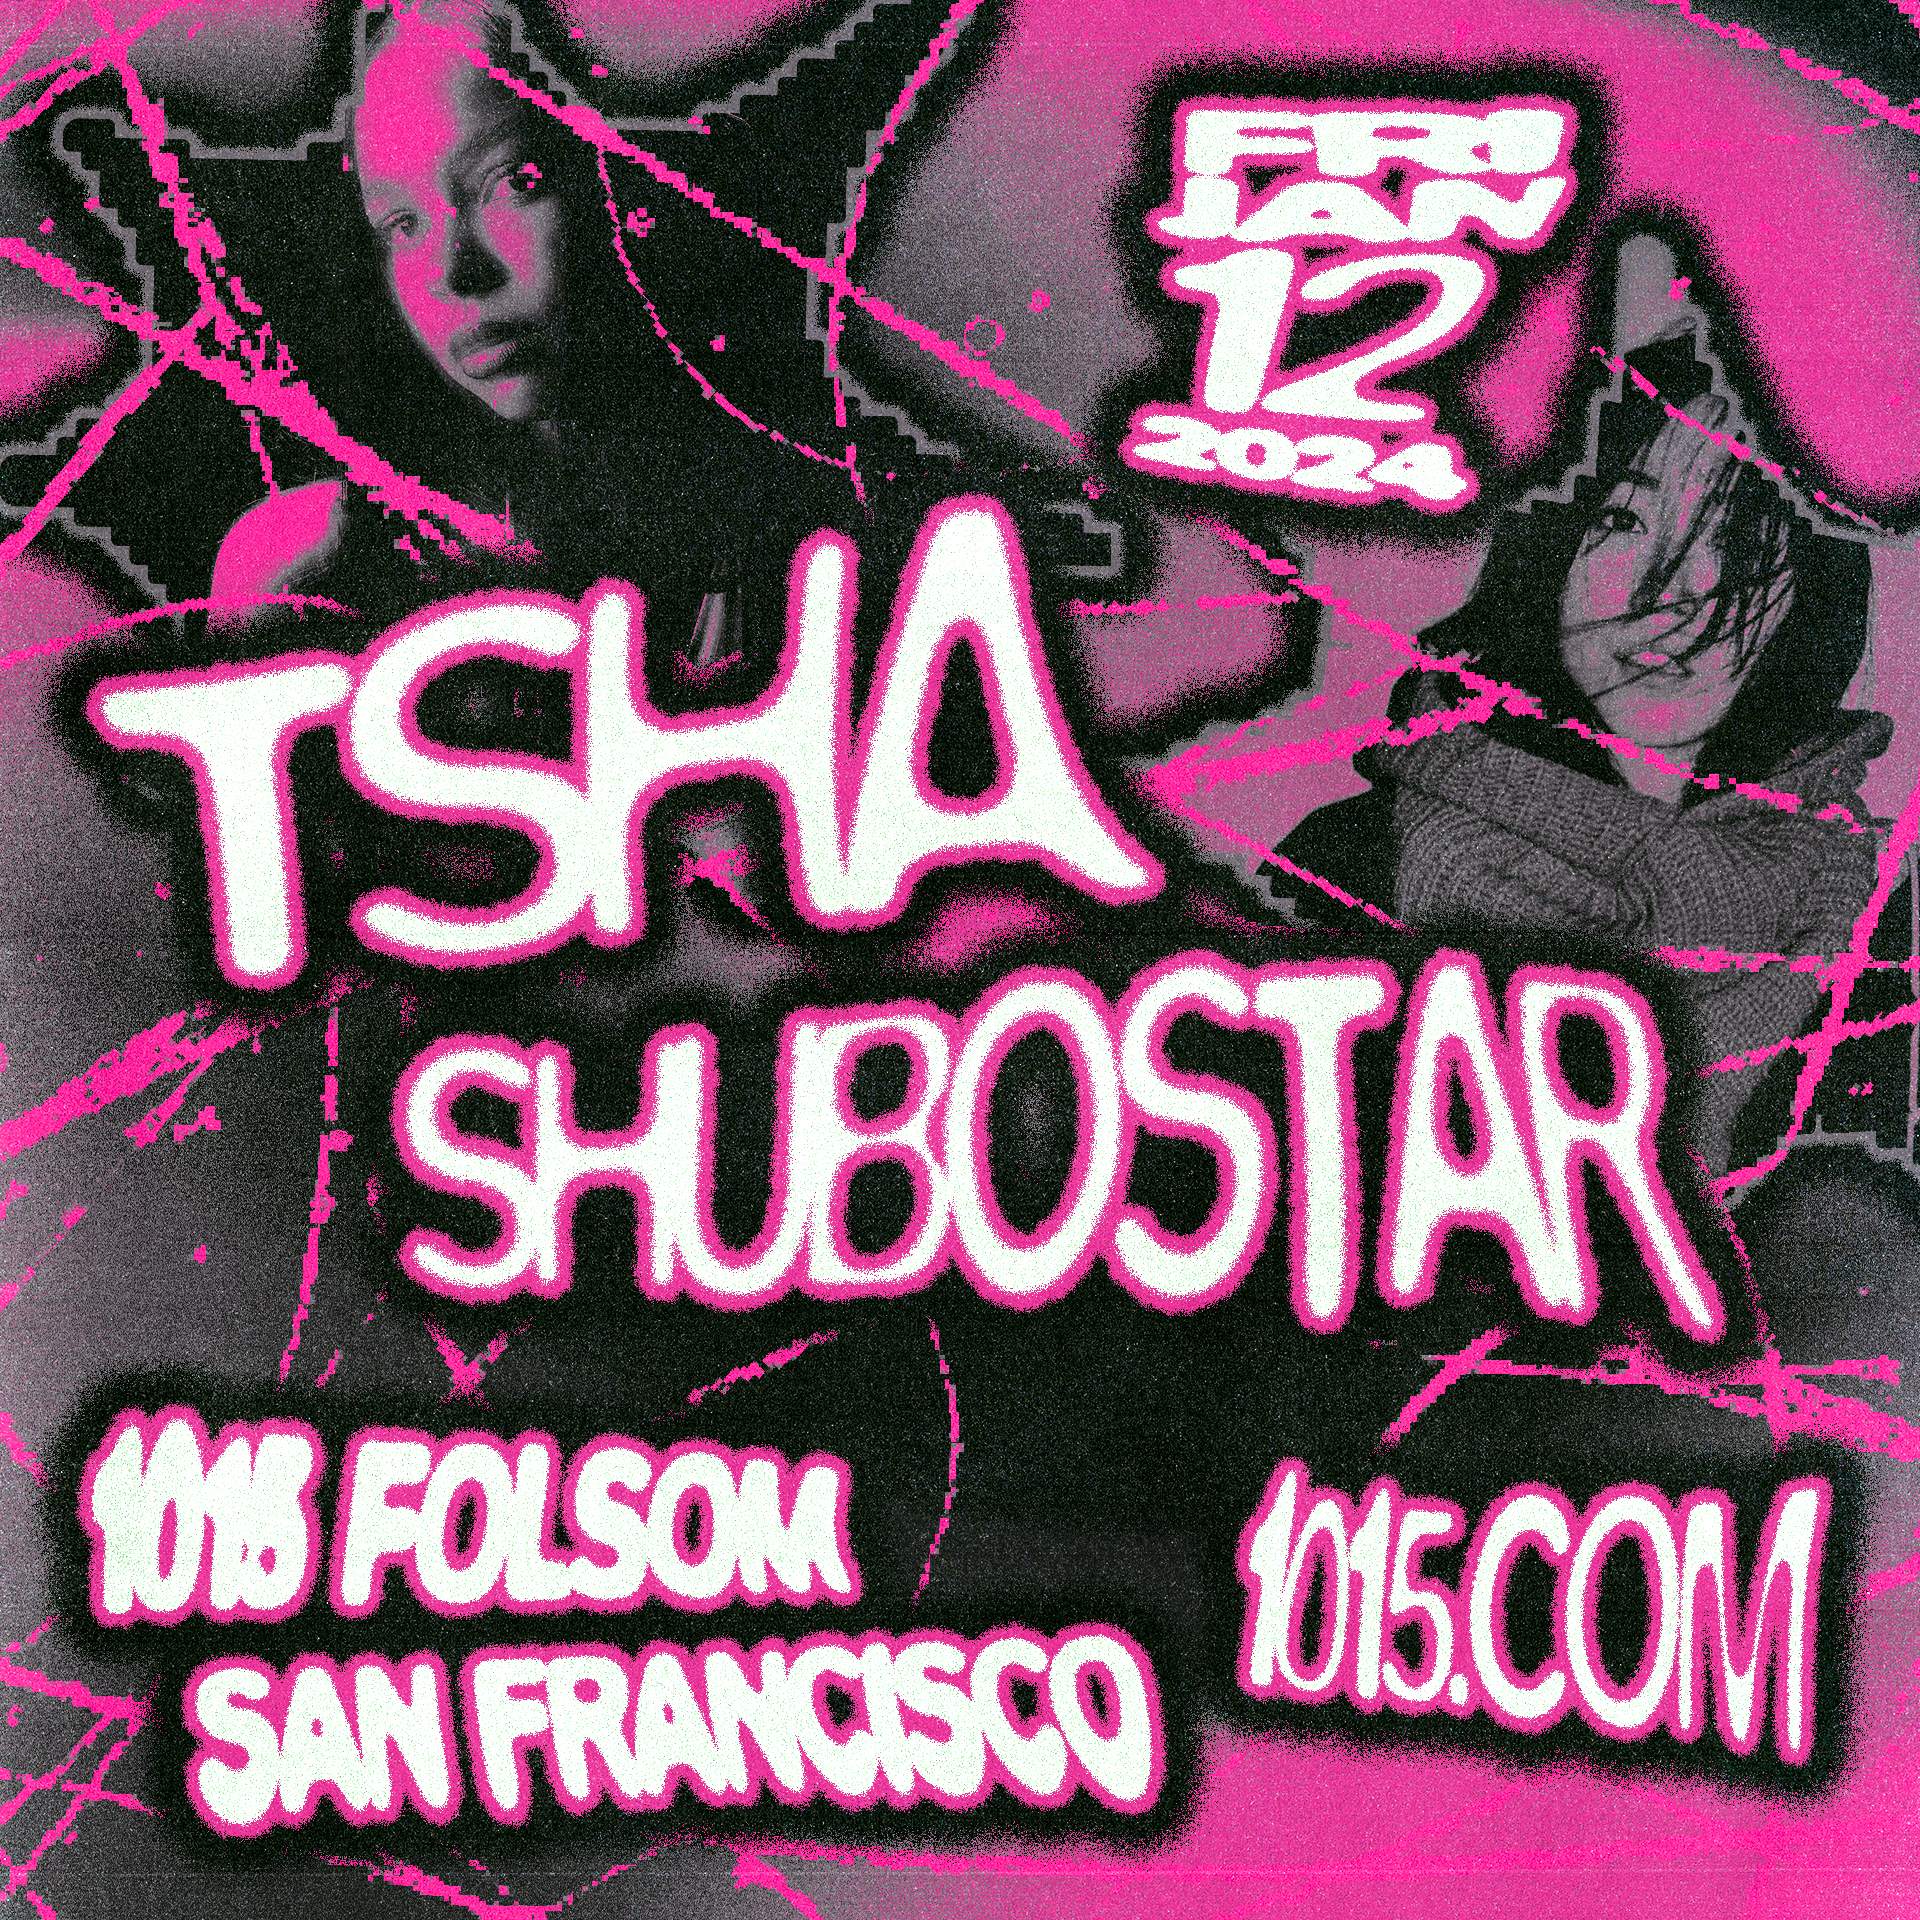 TSHA + Shubostar - Página frontal